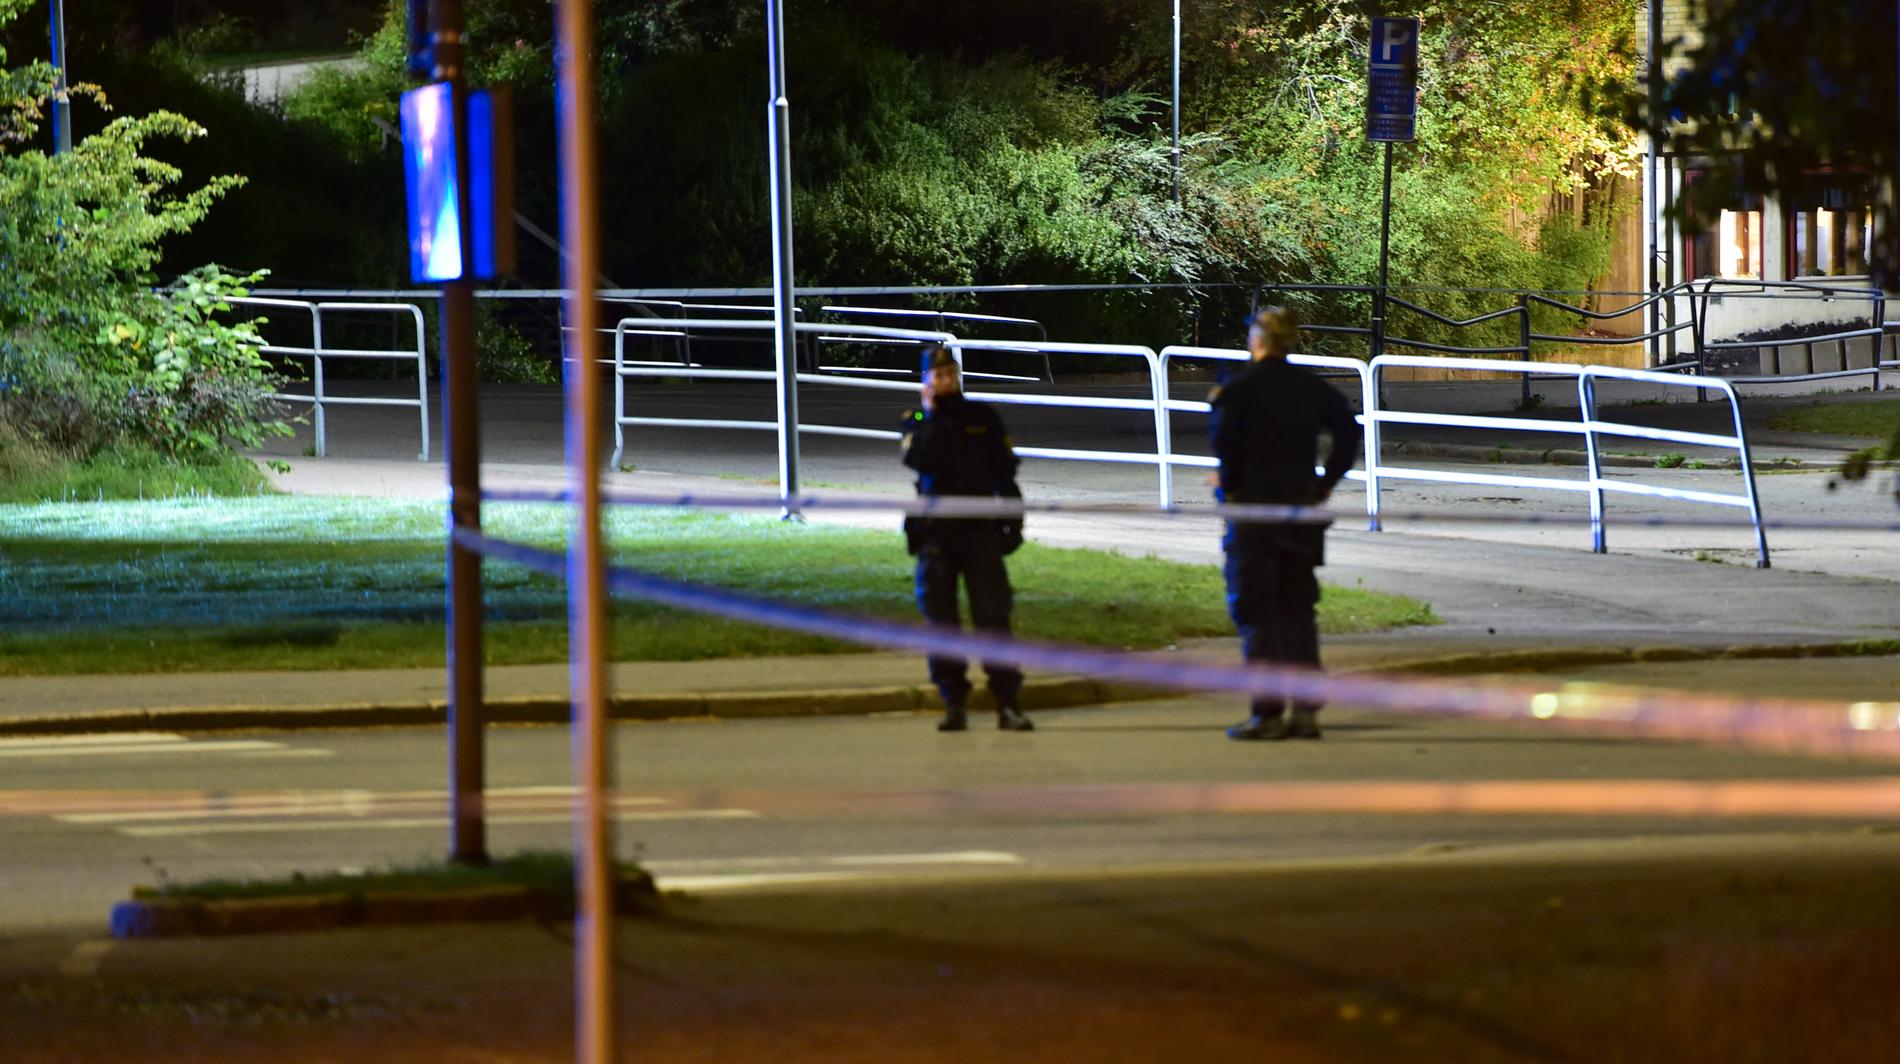 Cirka fyra timmar senare sköts en 21-årig man till döds vid en skola i Brandkärr, Nyköping. Det är oklart om det finns kopplingar mellan morden.